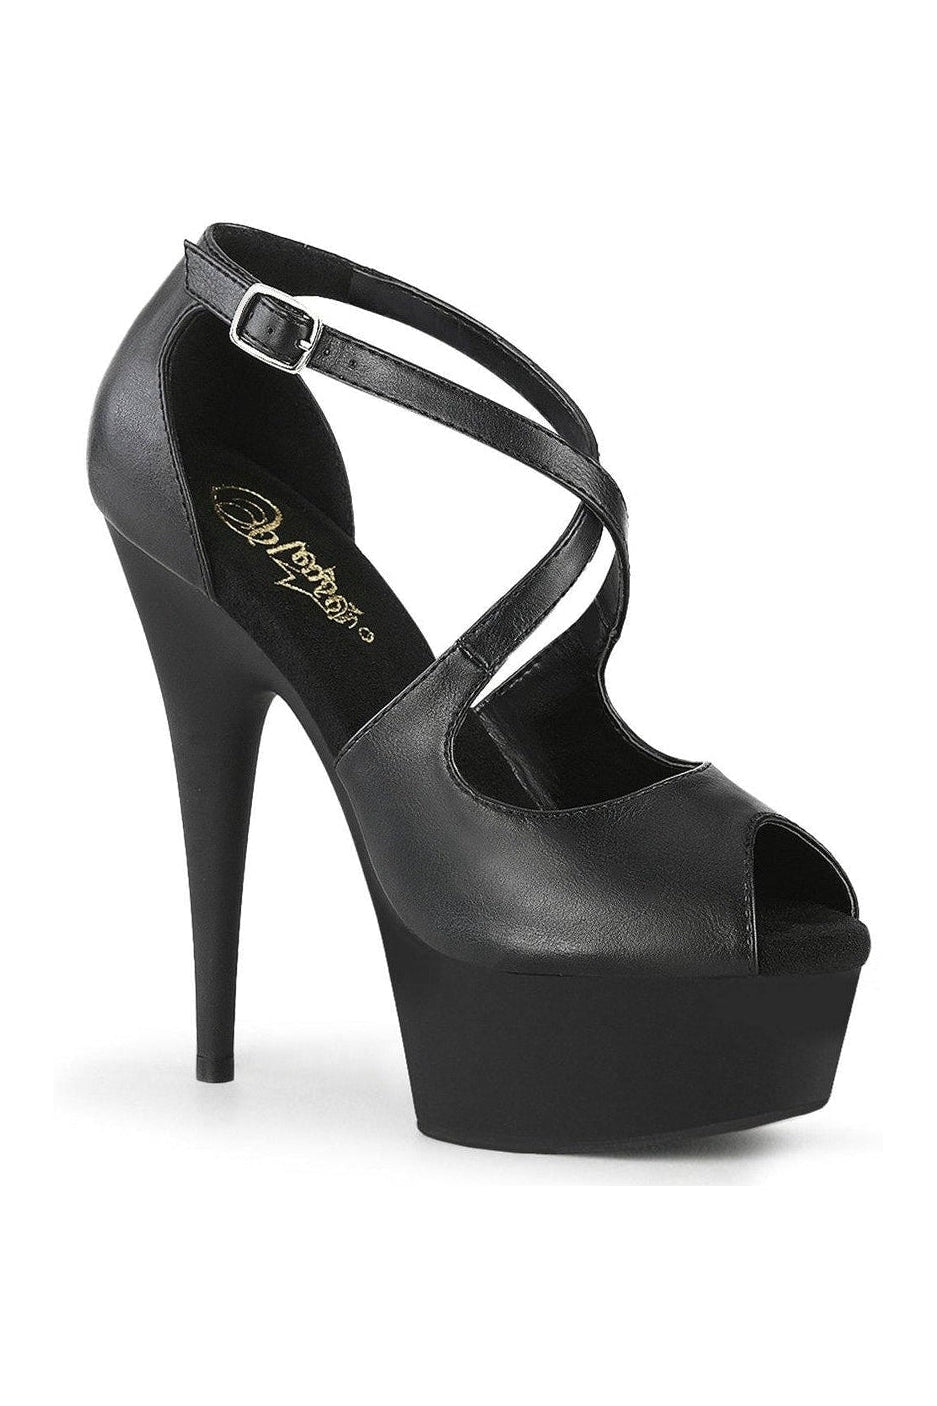 DELIGHT-621 Exotic Sandal | Black Faux Leather-Sandals-Pleaser-Black-8-Faux Leather-SEXYSHOES.COM